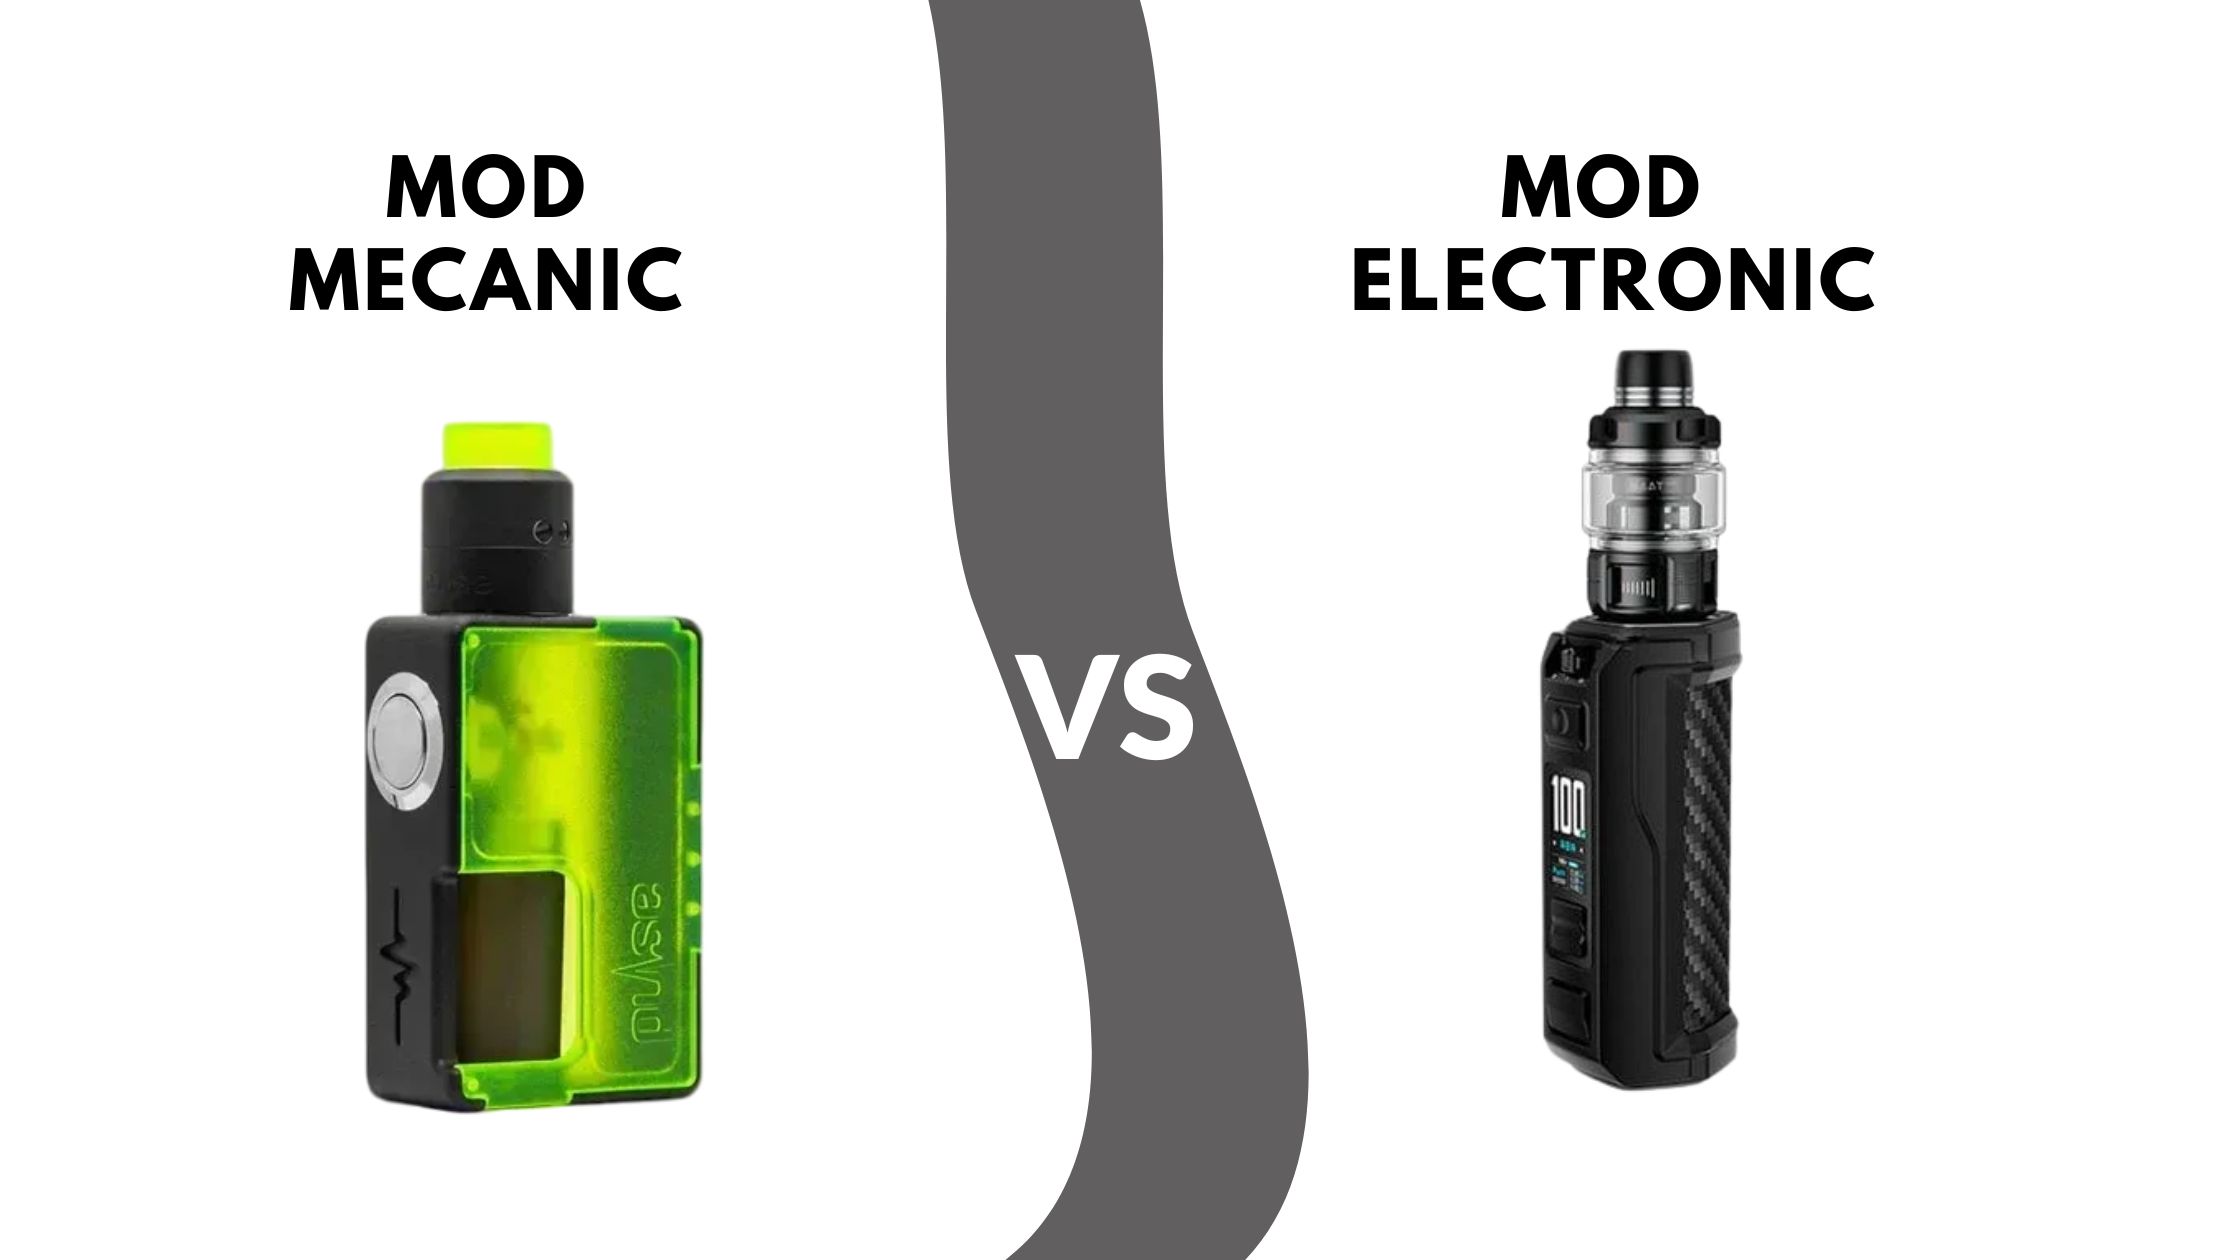 Mod electronic versus mod mecanic